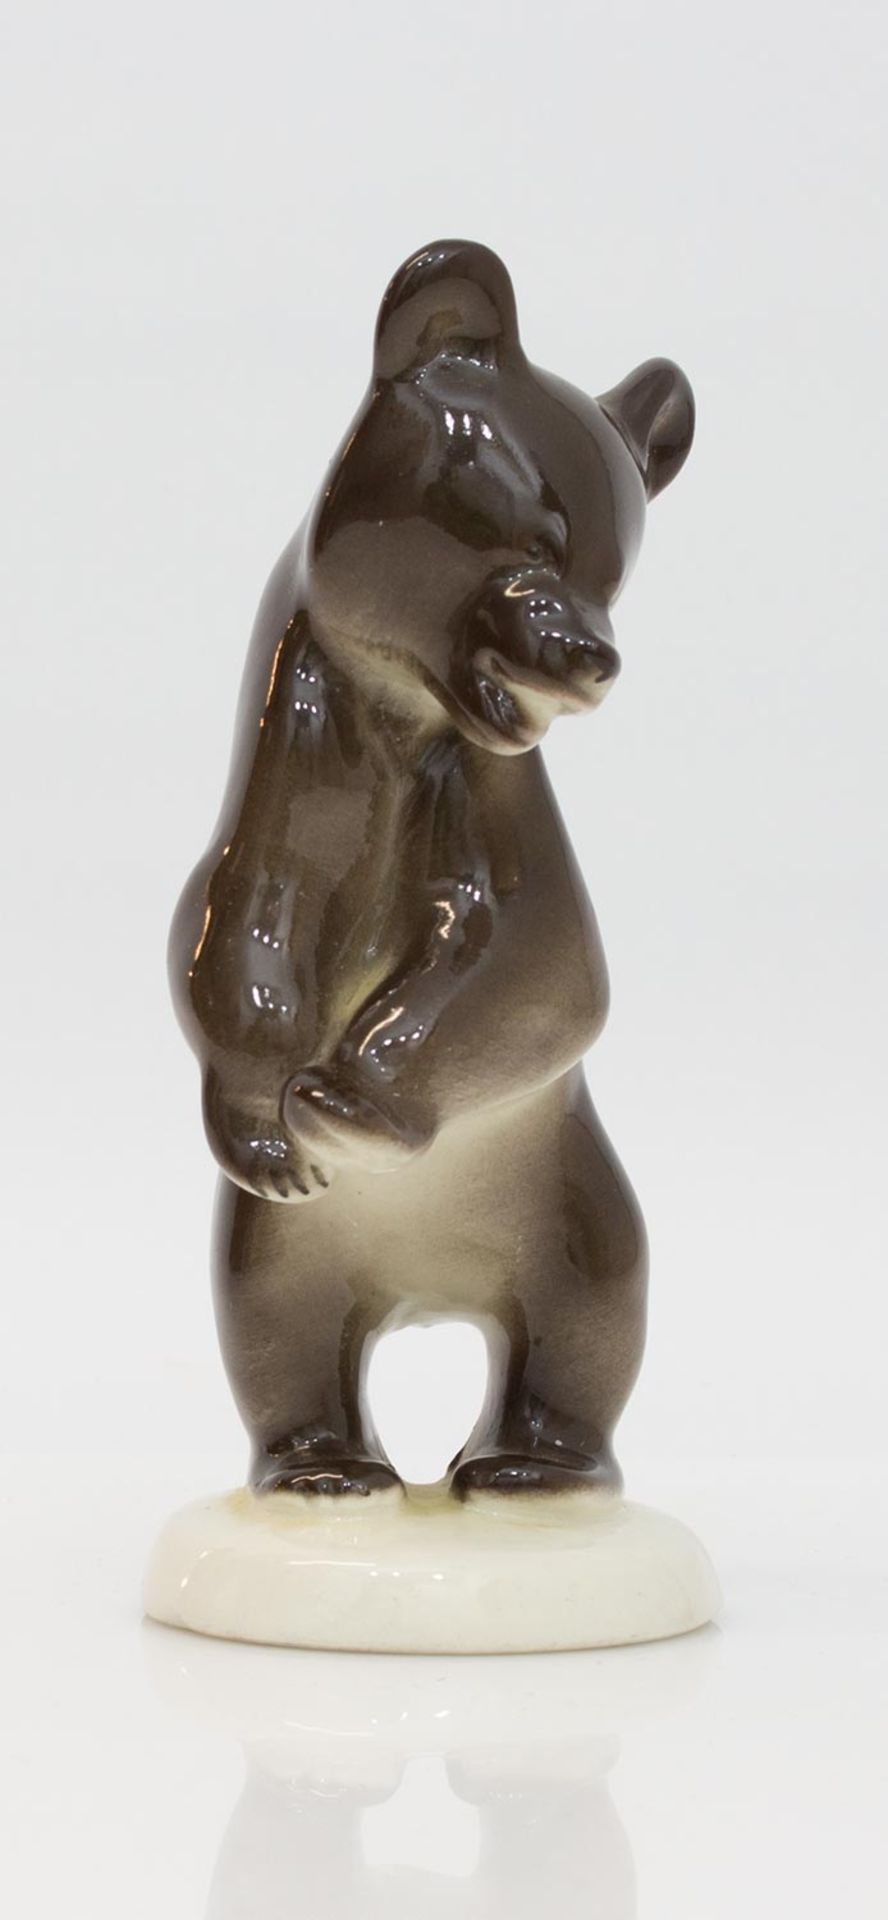 Bär braun glasierte Keramik, unbek. Herstellermarke, H. 14,5 cm